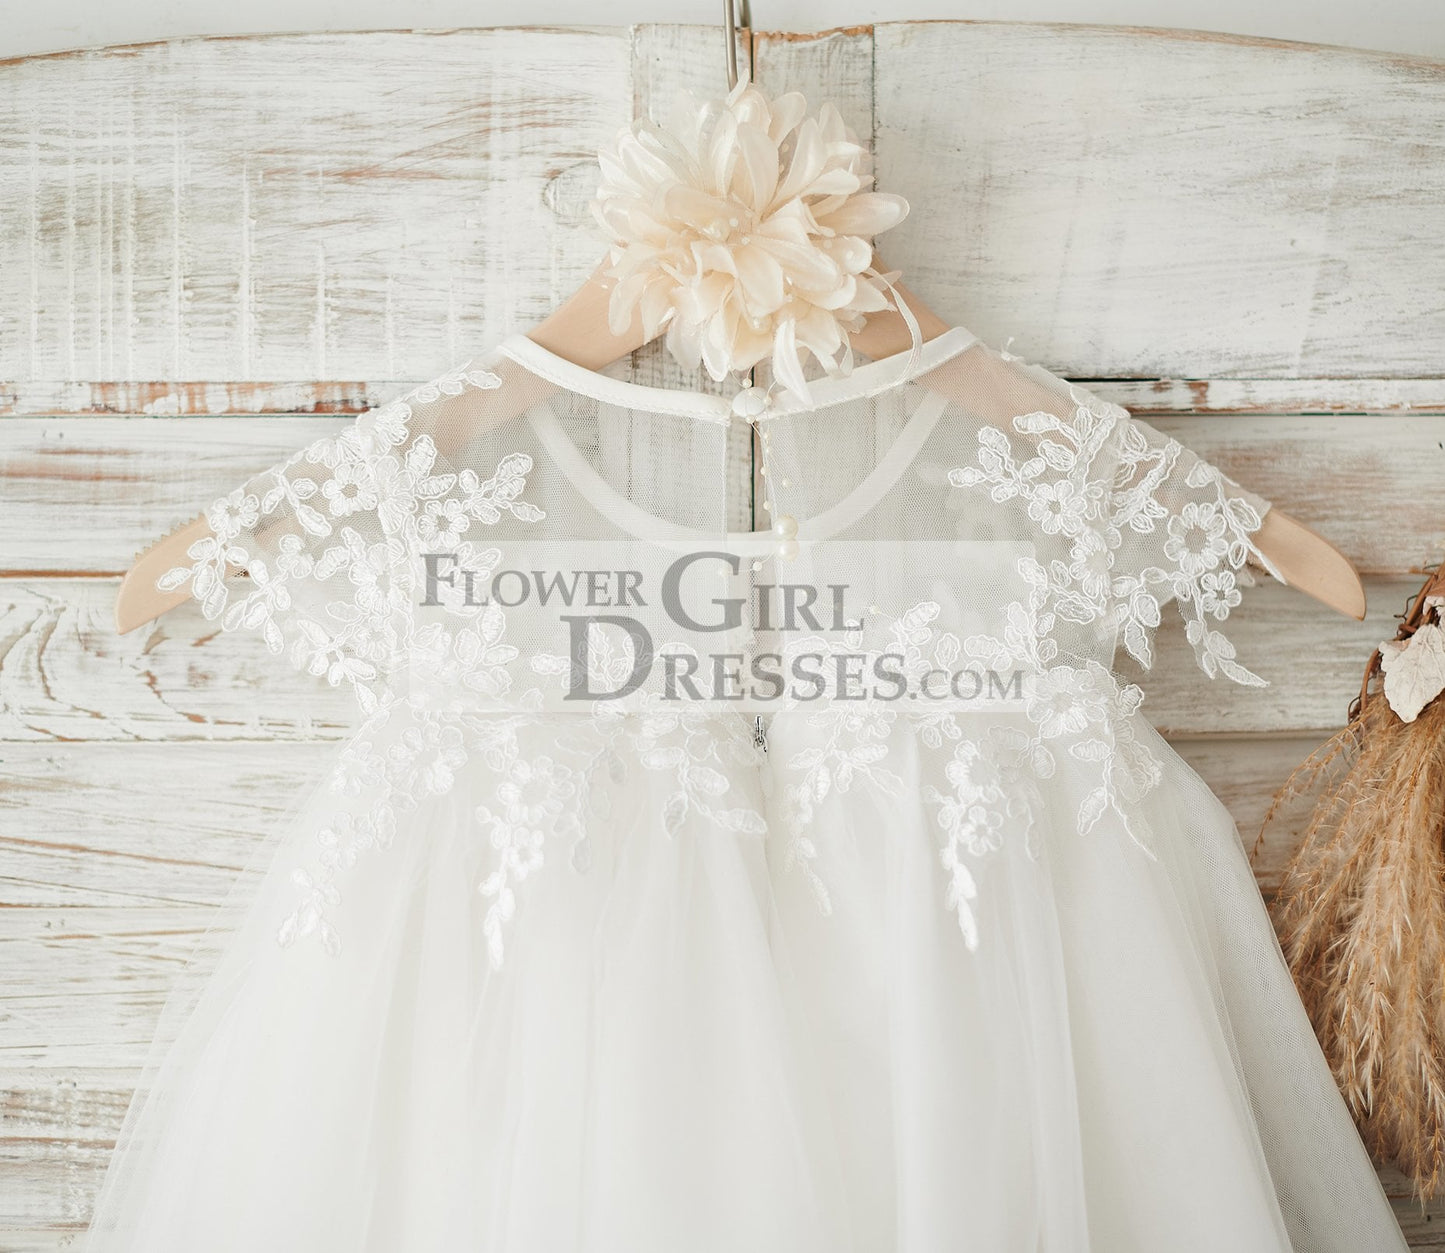 Boho Beach Sheer Neck Ivory Tulle Lace Wedding Flower Girl Dress